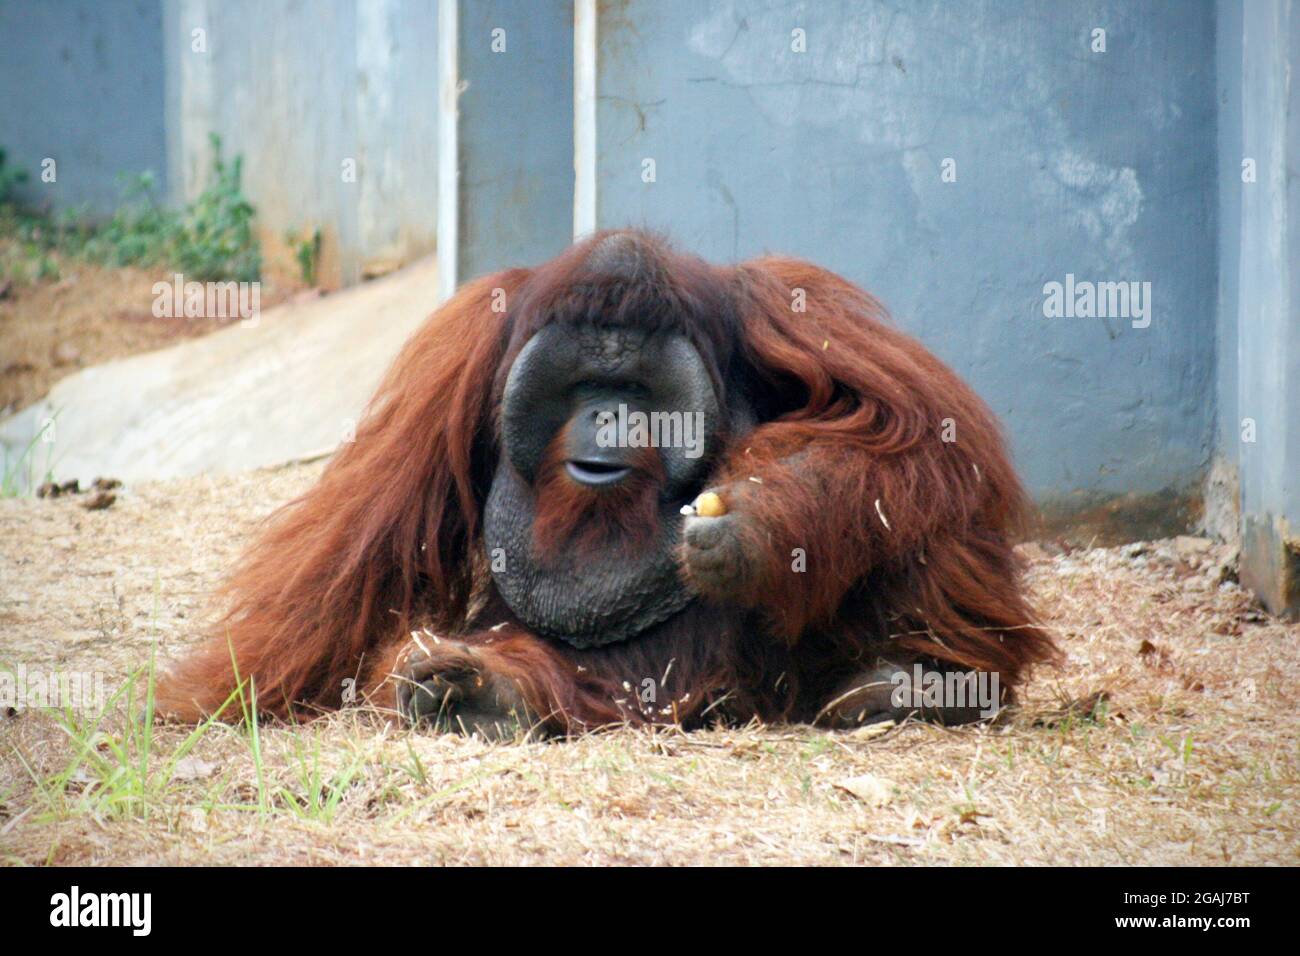 Pongo pygmaeus es una especie de orangután nativo de la isla de Borneo. Junto con el orangután de Sumatra (Pongo abelii). Foto de stock